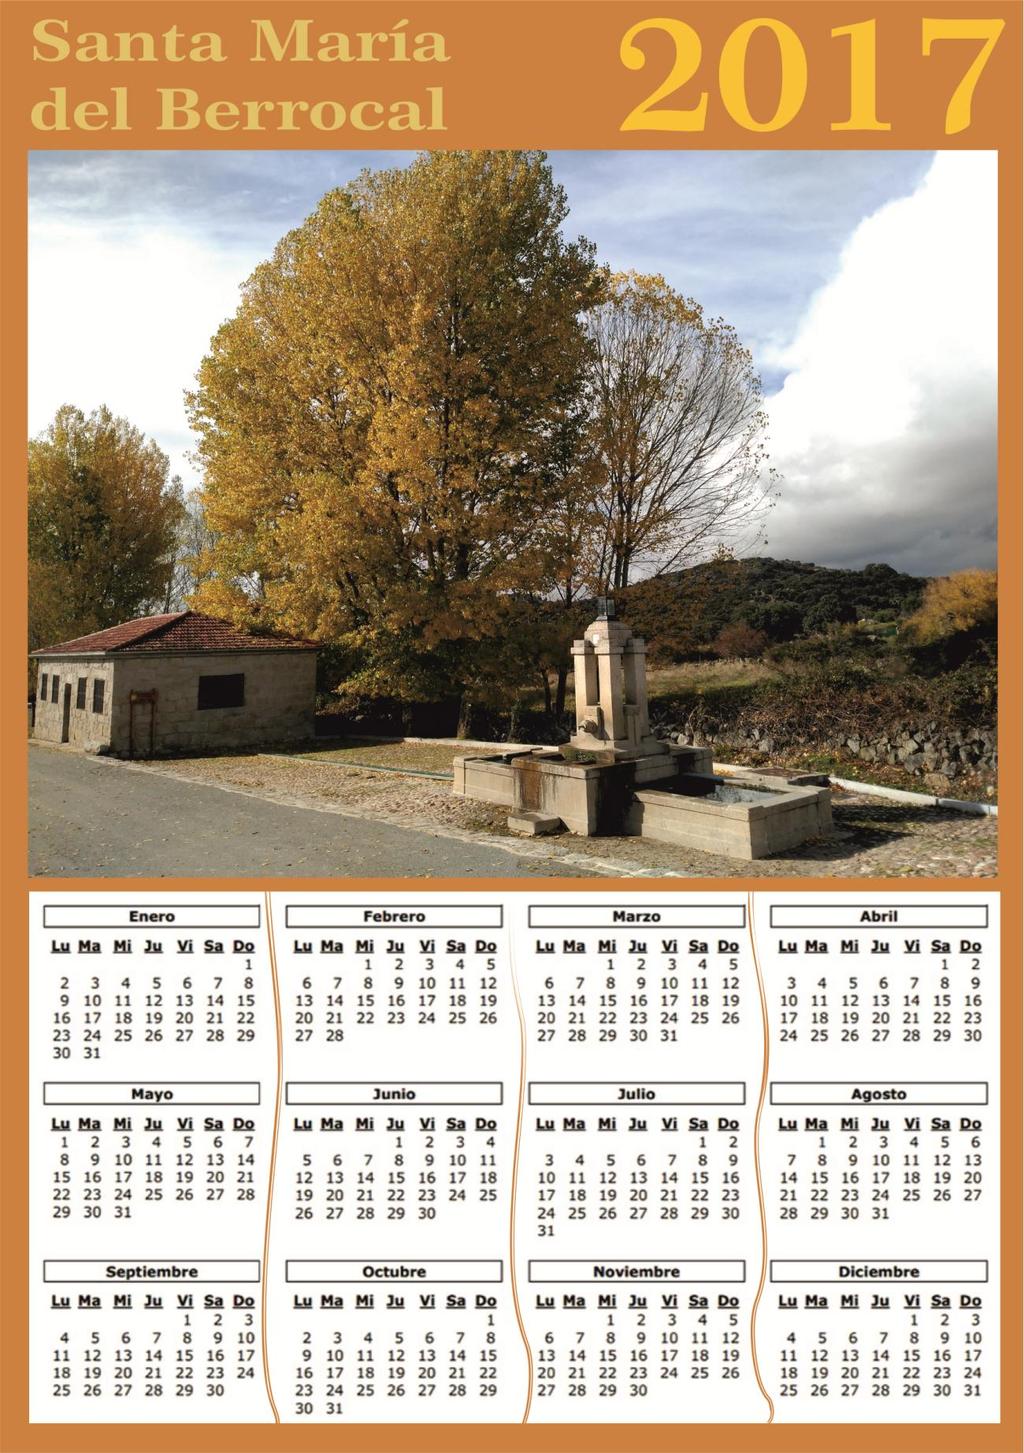 Y para desearos un feliz año nuevo os mostramos el calendario que hemos realizado. Esta vez le ha tocado todo el protagonismo a nuestro emblemático Pilón.